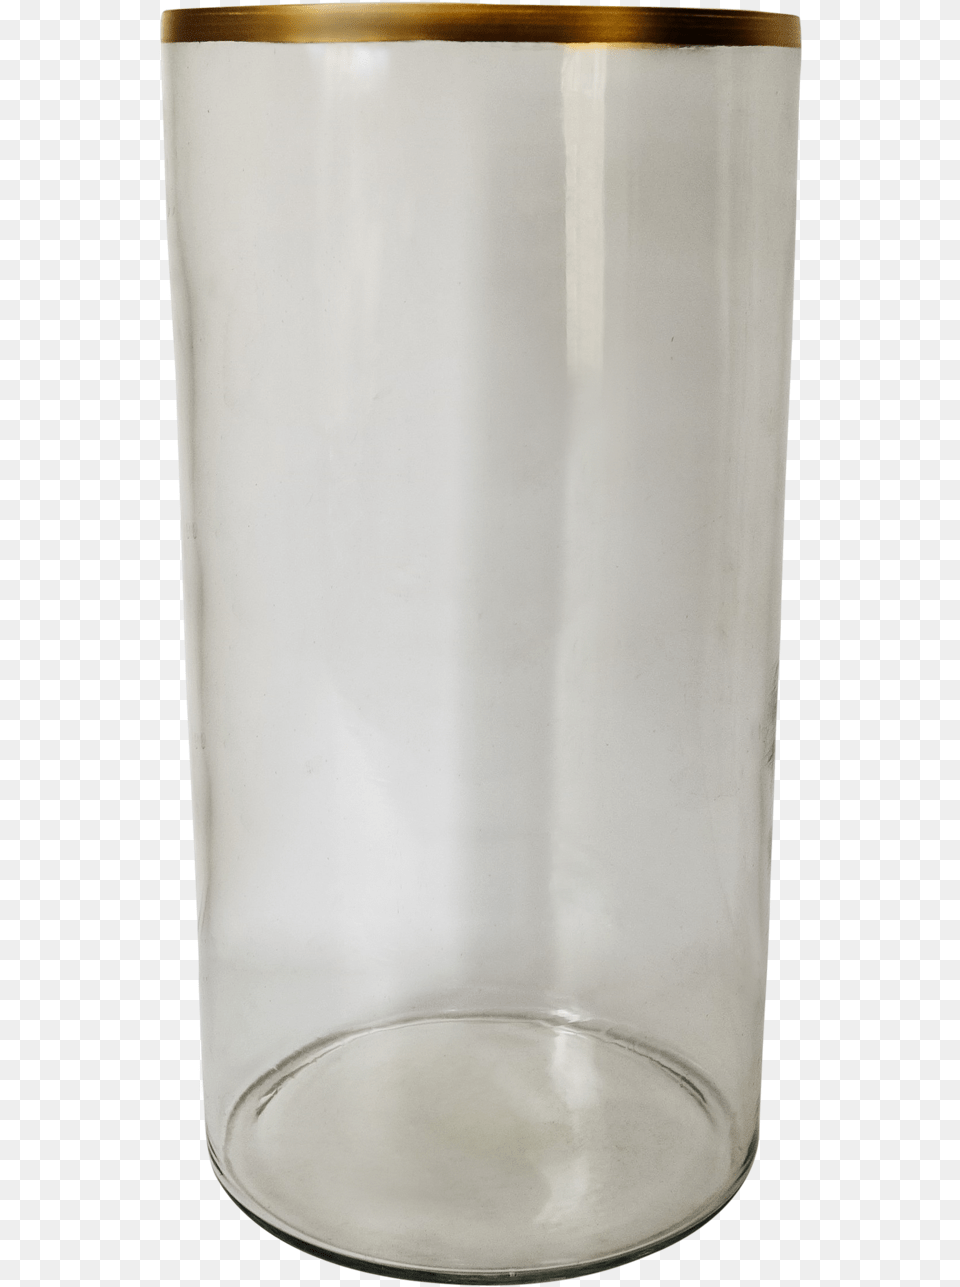 Big Flower Vase, Glass, Jar, Pottery, Can Free Transparent Png